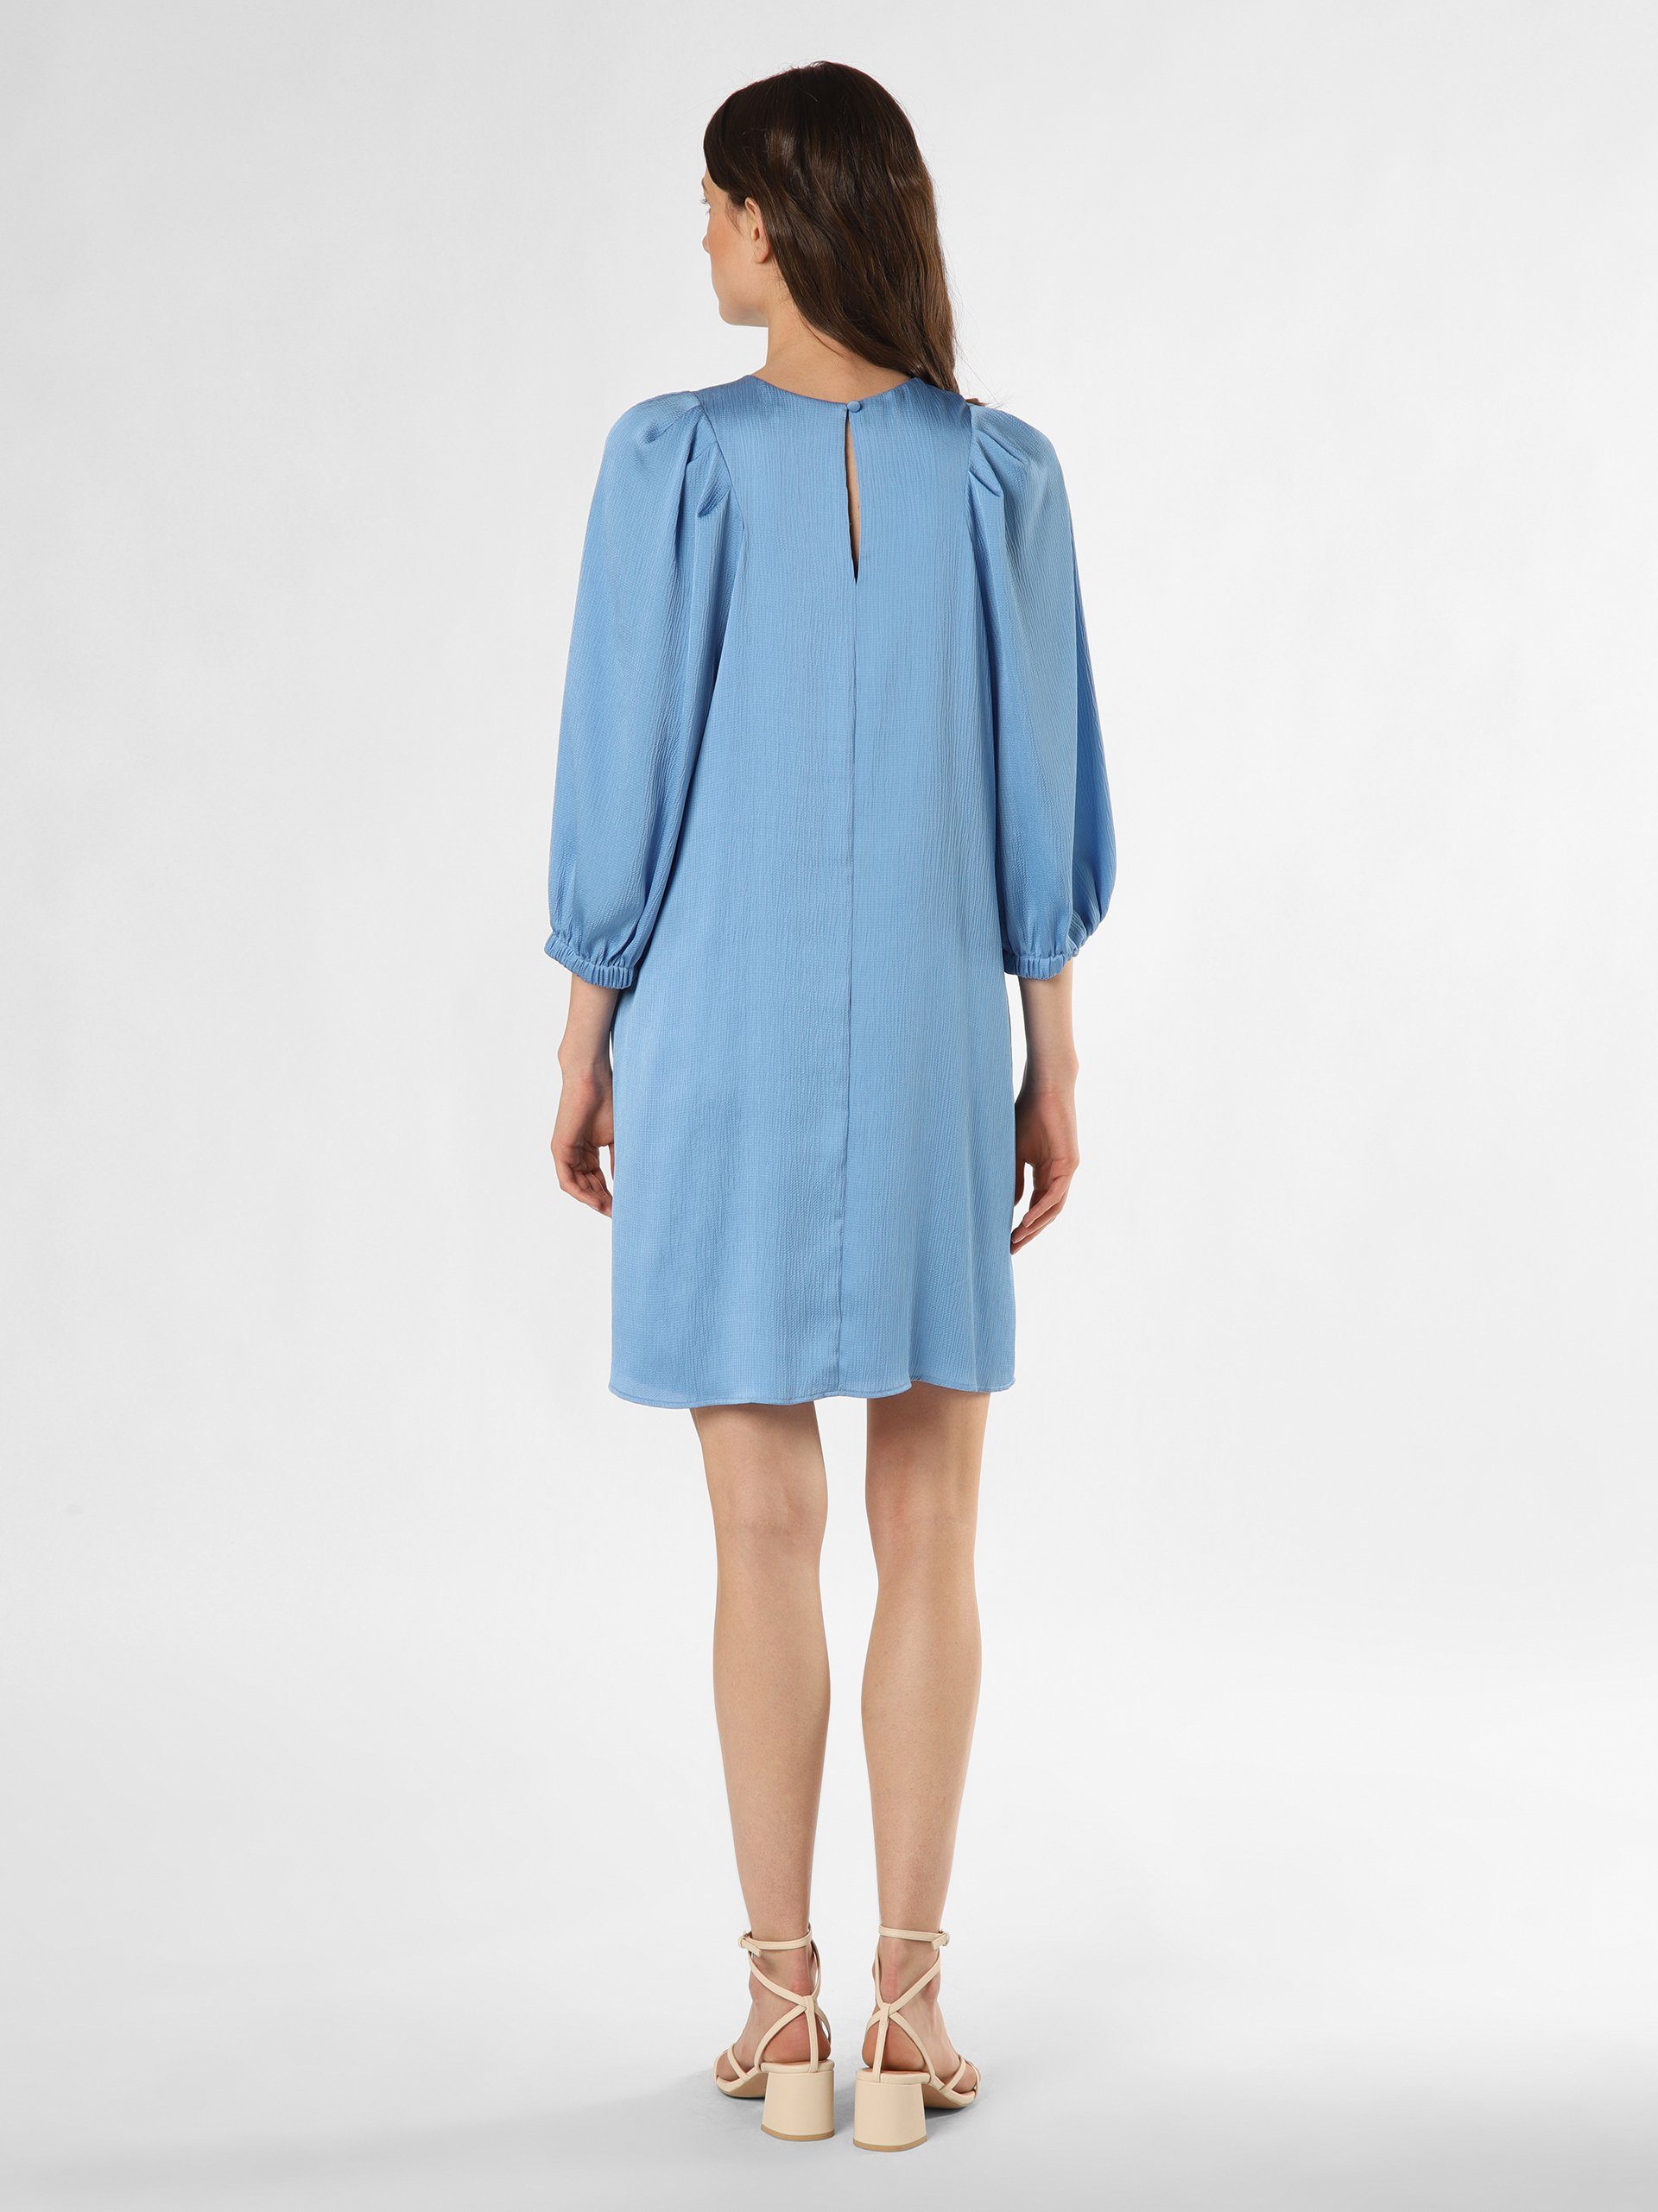 Marie Lund blau A-Linien-Kleid